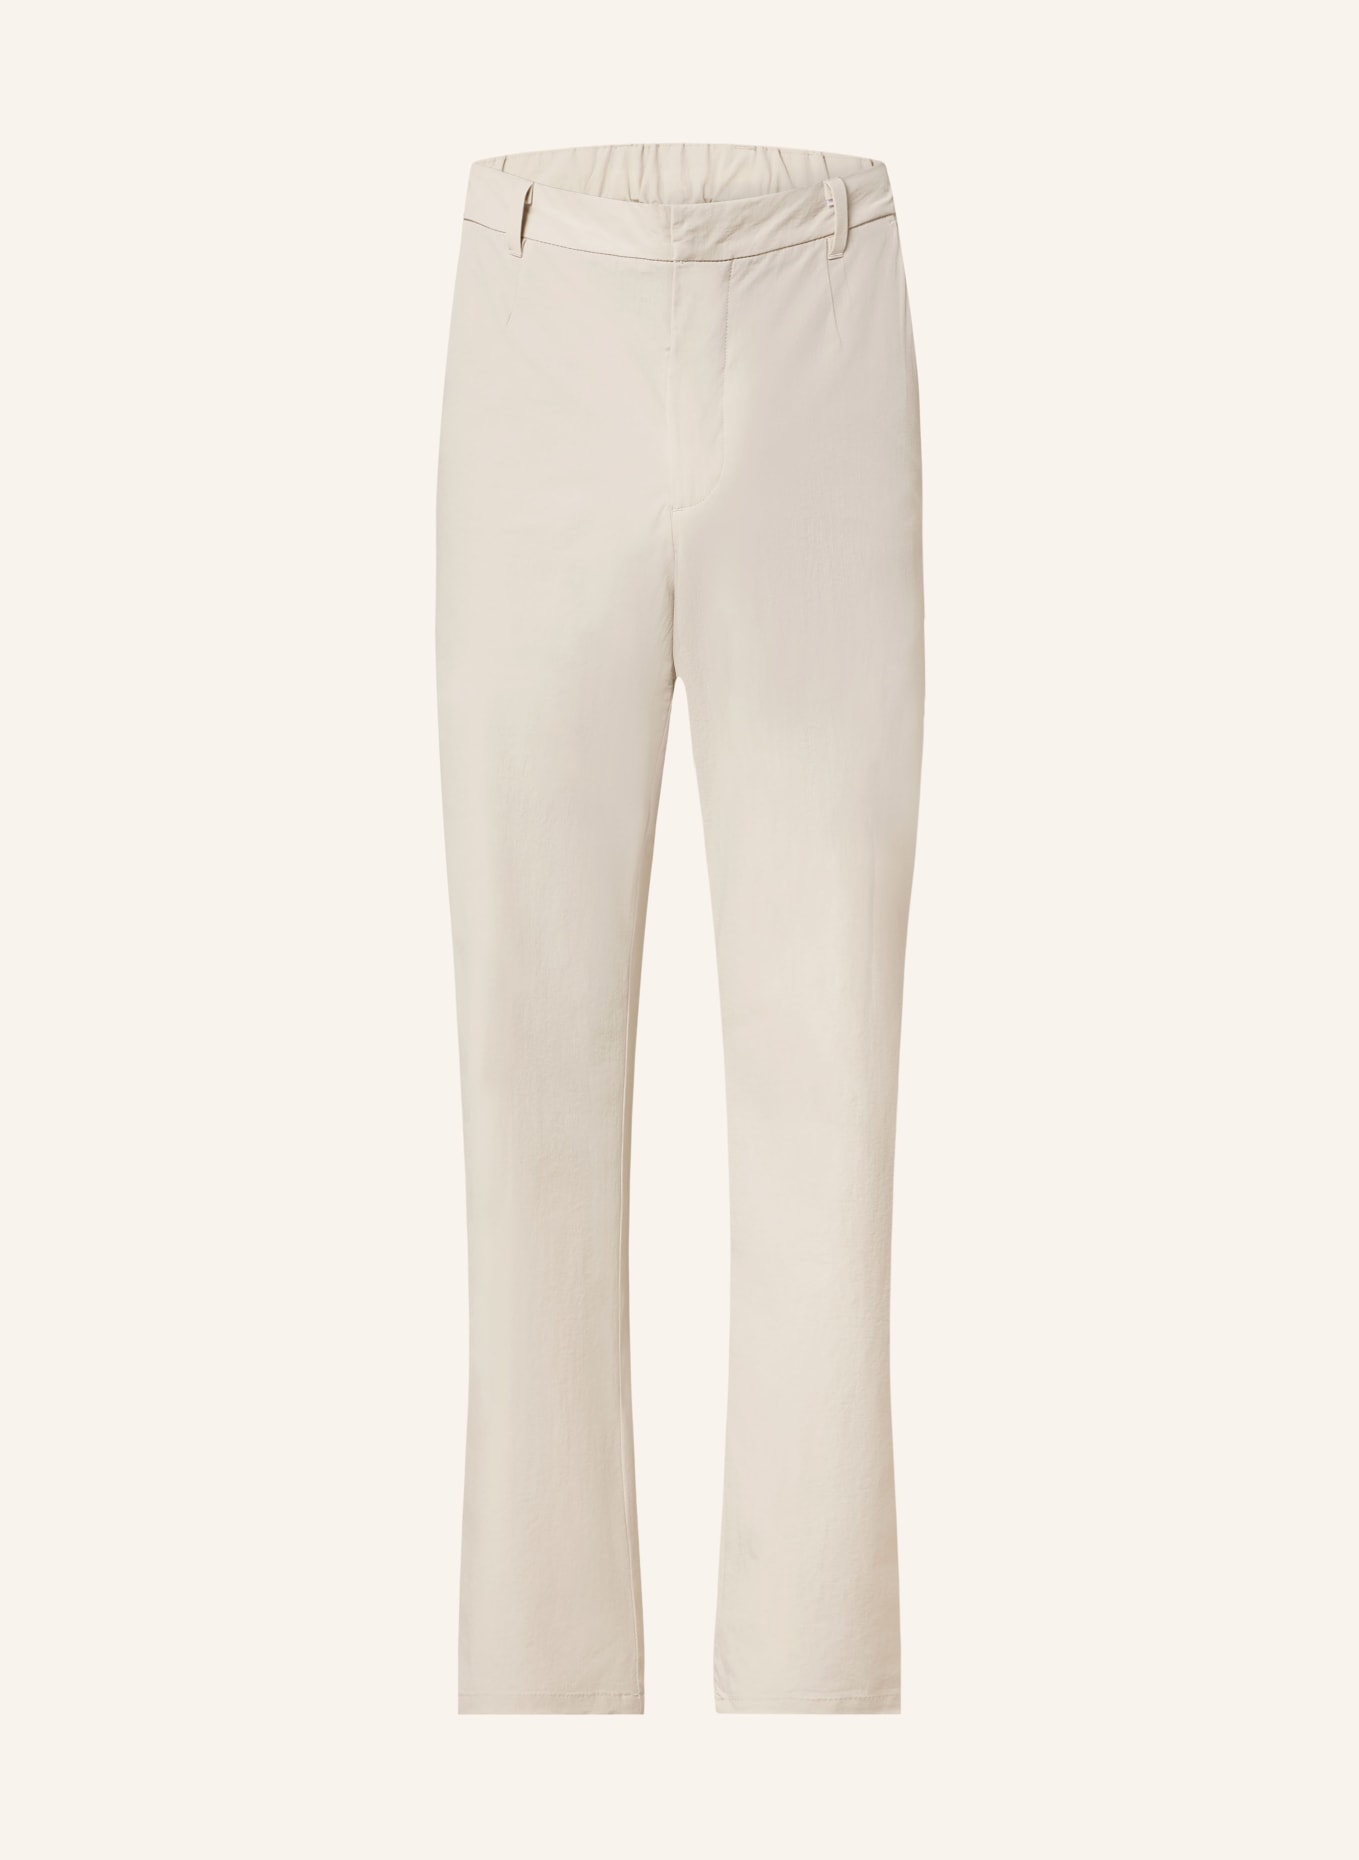 NORSE PROJECTS Suit trousers AAREN regular fit, Color: 0920 Light Khaki (Image 1)